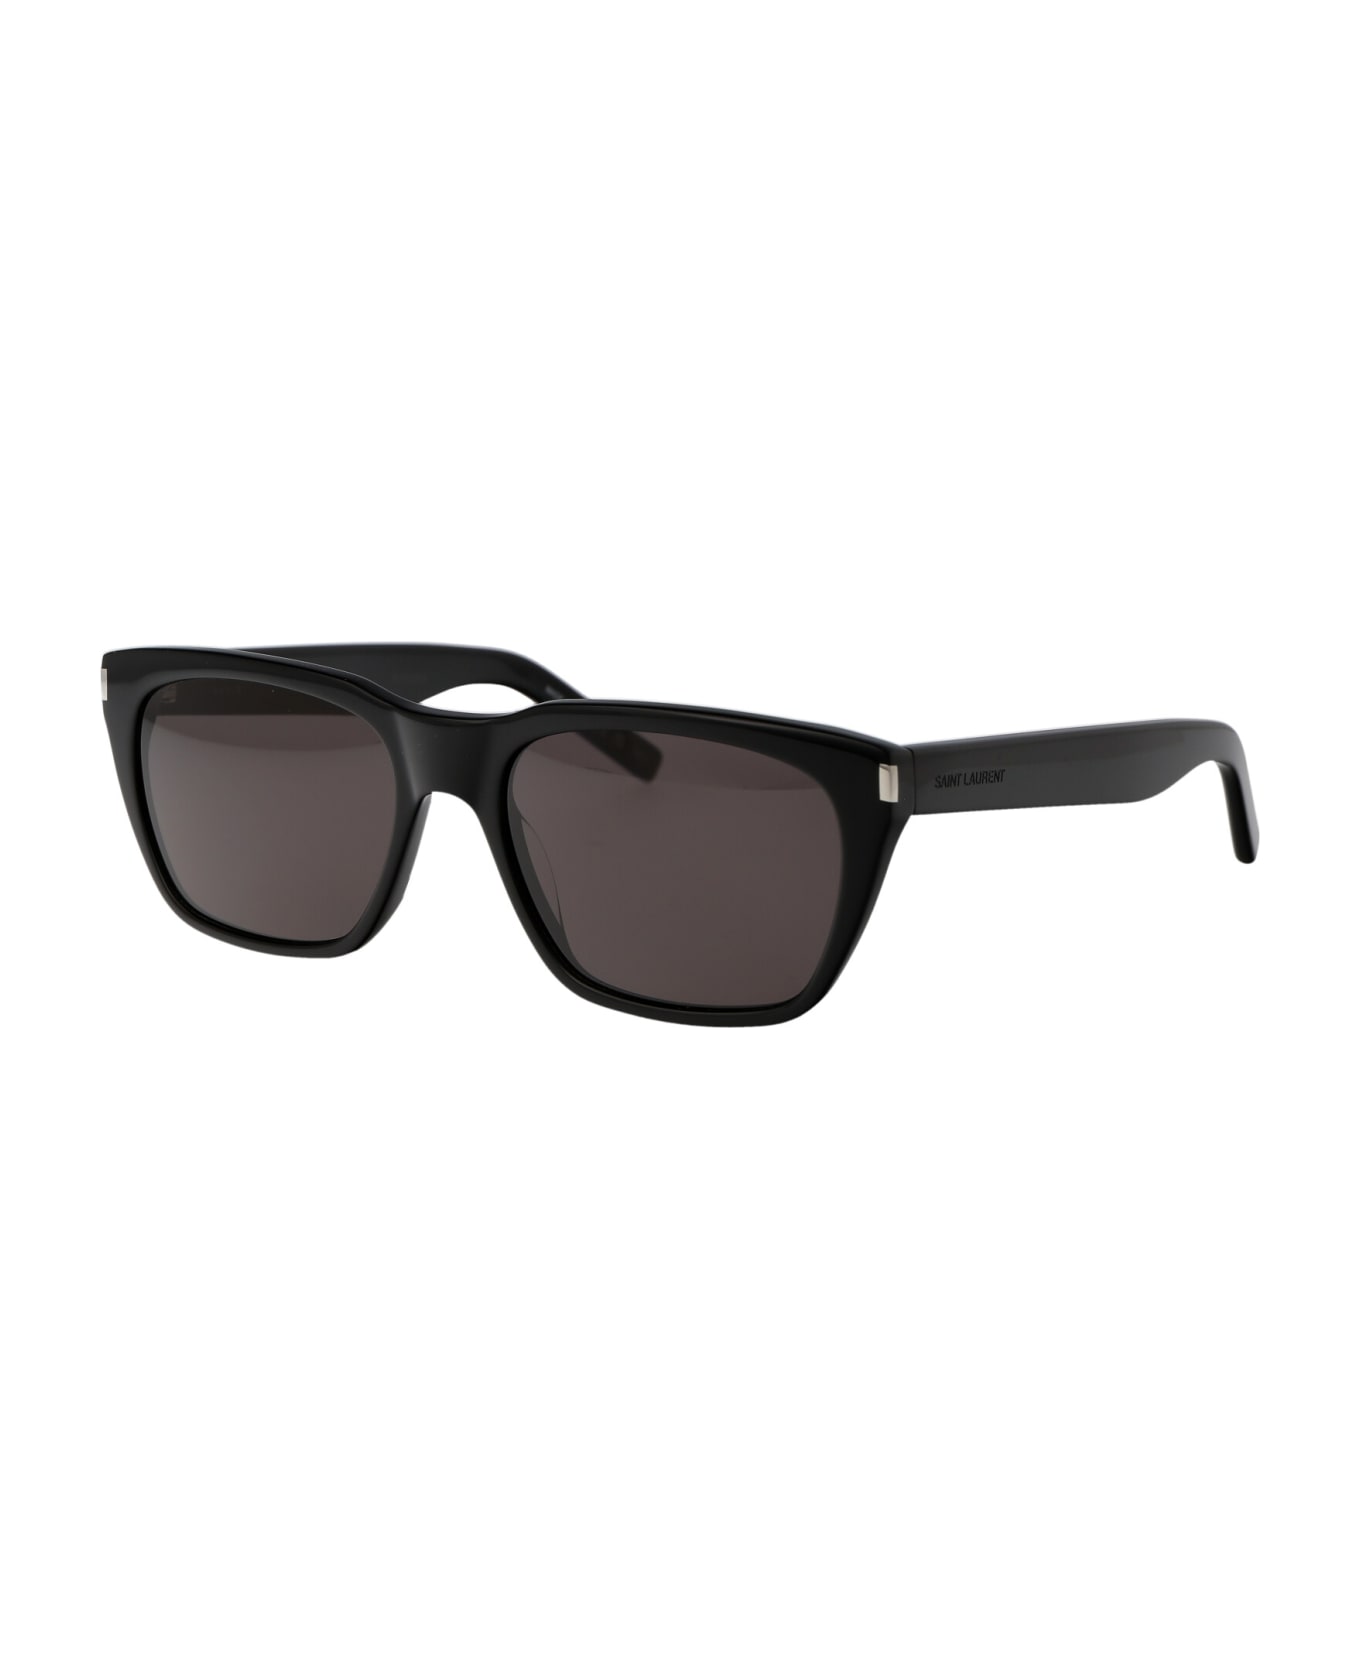 Saint Laurent Eyewear Sl 598 Sunglasses - 001 BLACK BLACK BLACK サングラス